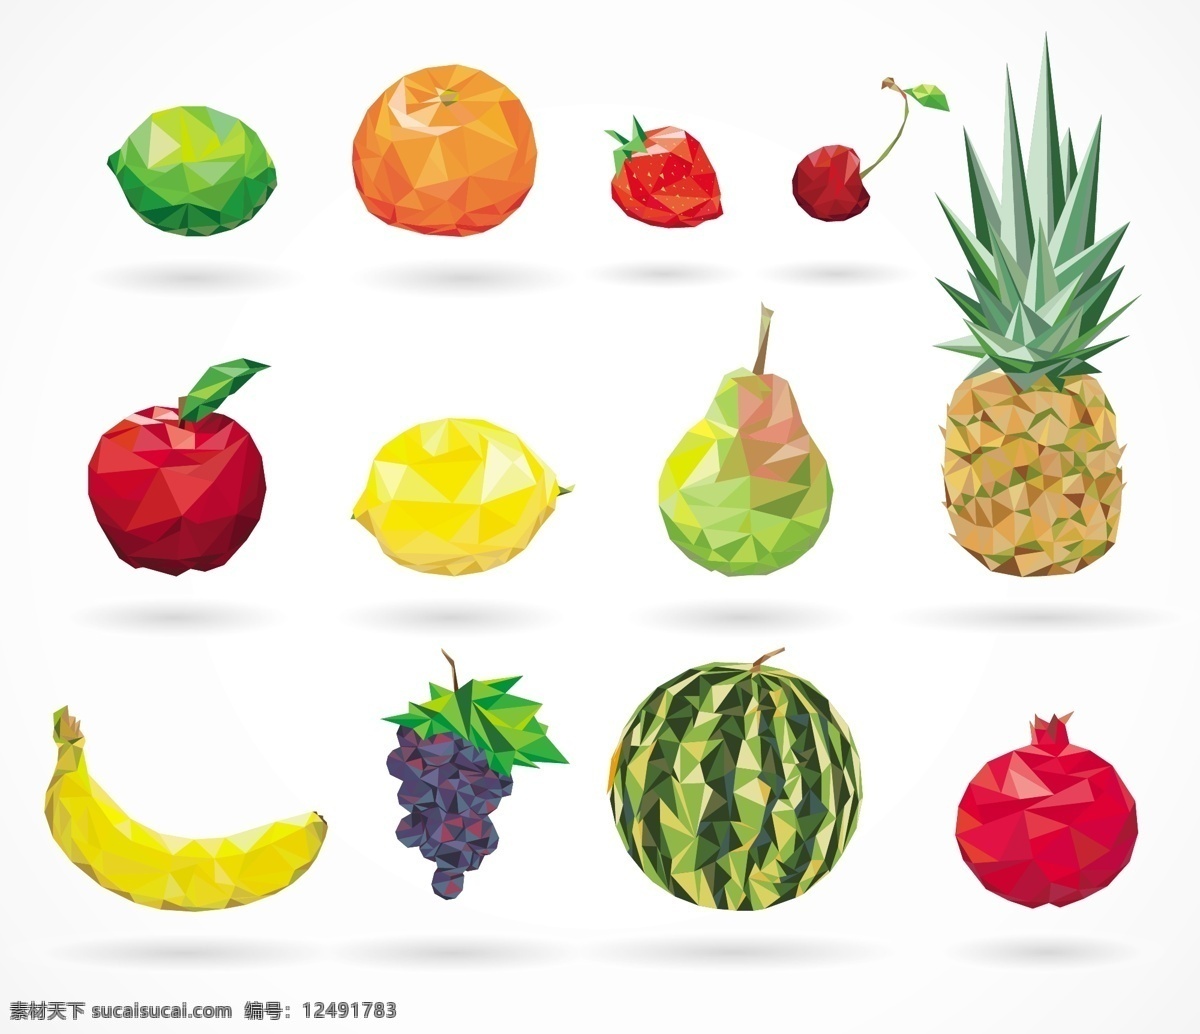 几何水果 柠檬 橙子 樱桃 草莓 苹果 梨子 菠萝 香蕉 葡萄 西瓜 石榴 多边形水果 水果图标 app图标 手机图标 生物世界 水果 白色